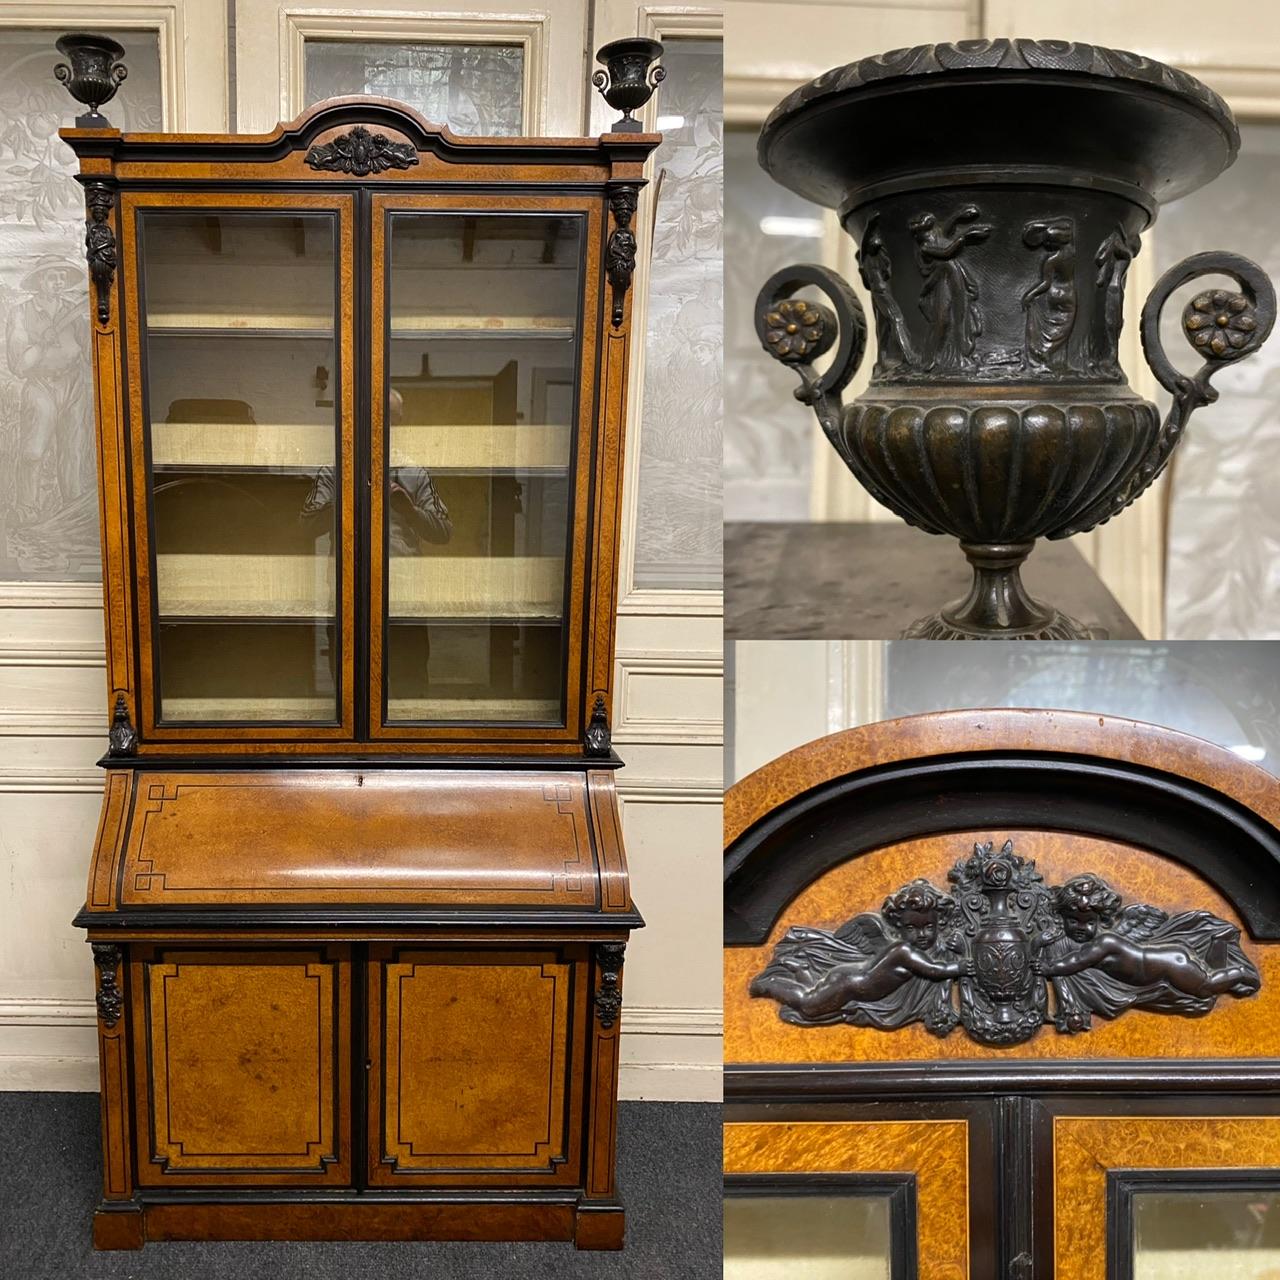 Ein hervorragendes Möbelstück aus dem 19. Jahrhundert, das in Italien vorwiegend aus Amboyna-Holz, aber auch aus Ebenholz gefertigt wurde. Die 2 Urnen auf der Oberseite sind aus Bronze, ebenso wie die Halterungen. Die 2 oberen Türen sind mit